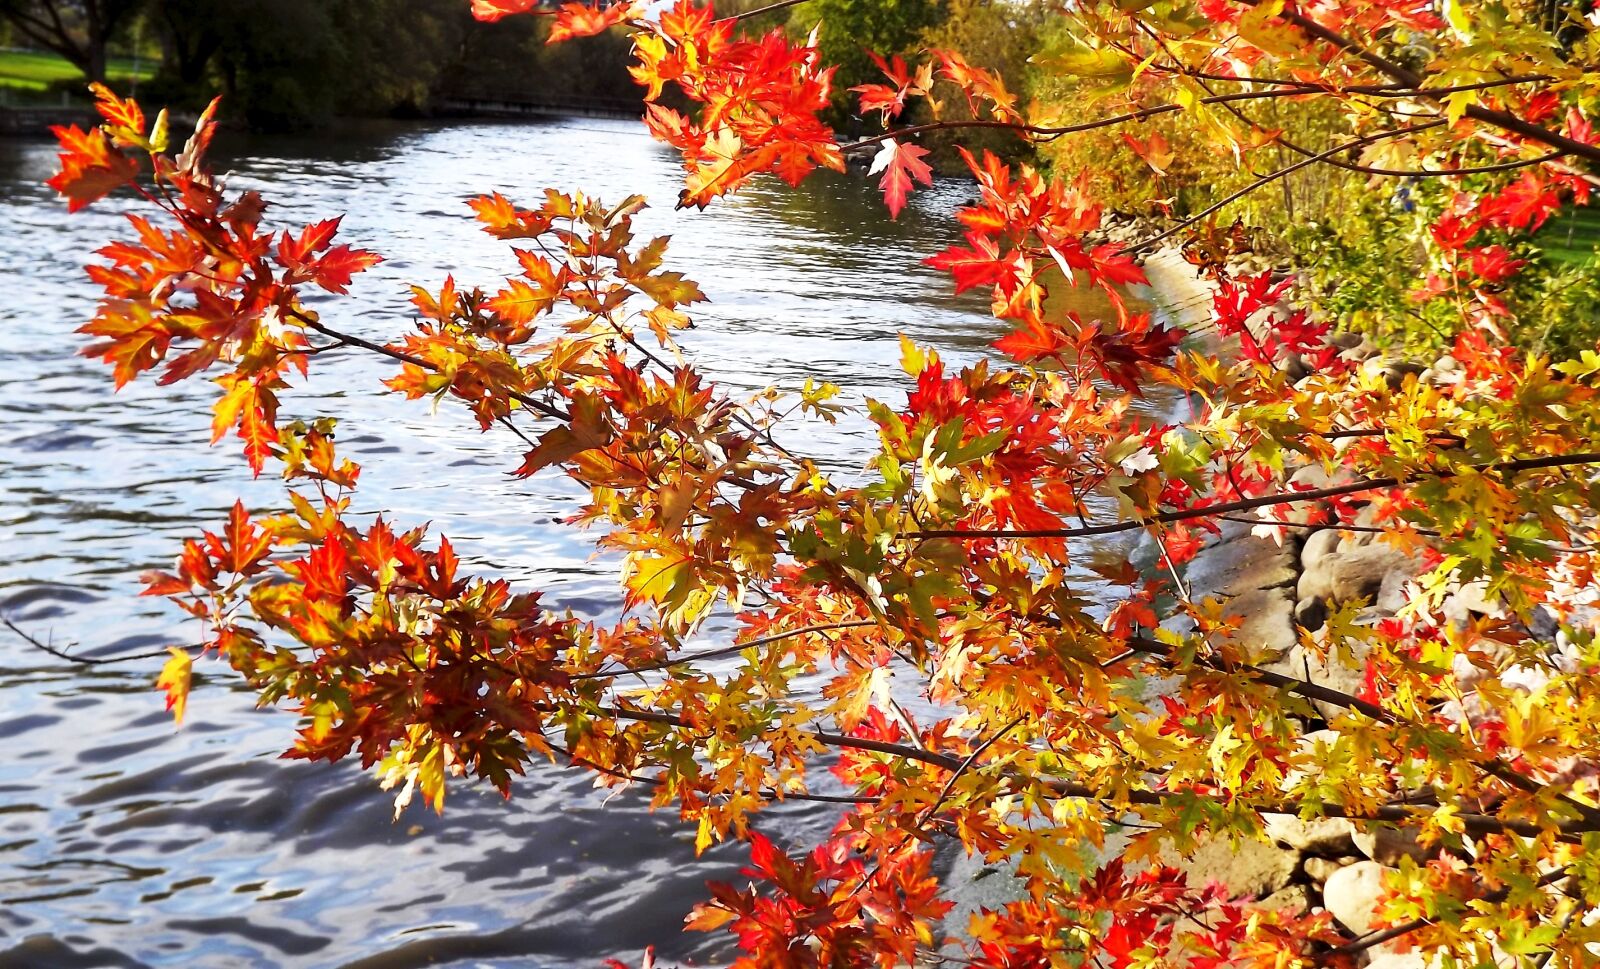 Fujifilm FinePix S3400 sample photo. Autumn, foliage, colorful photography